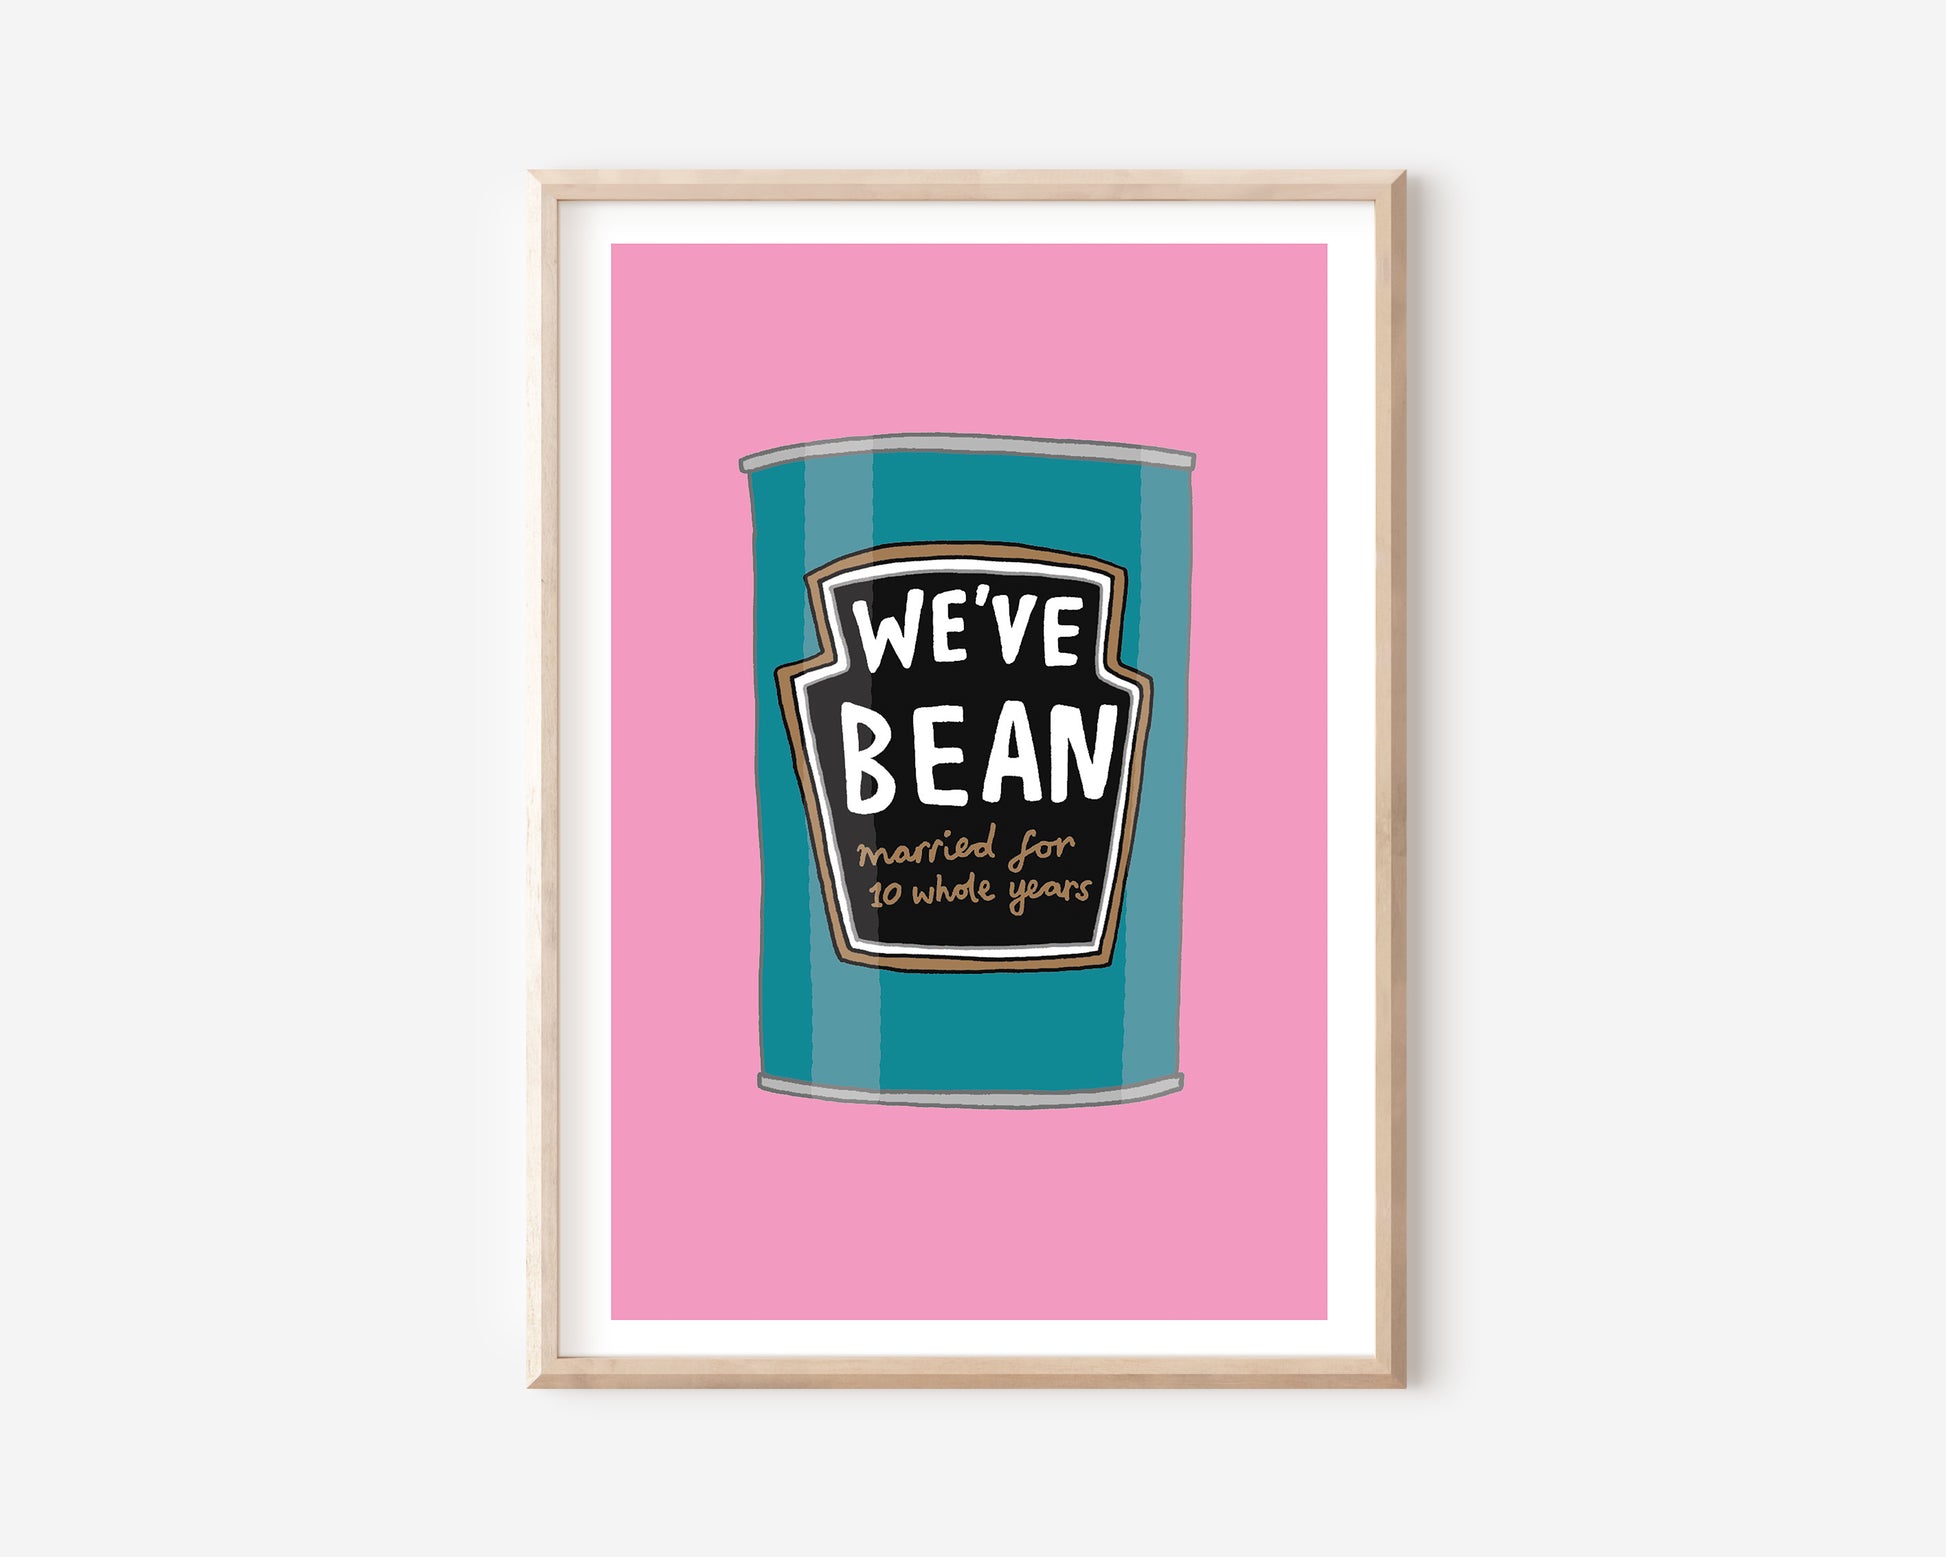 A Beans A4 Print